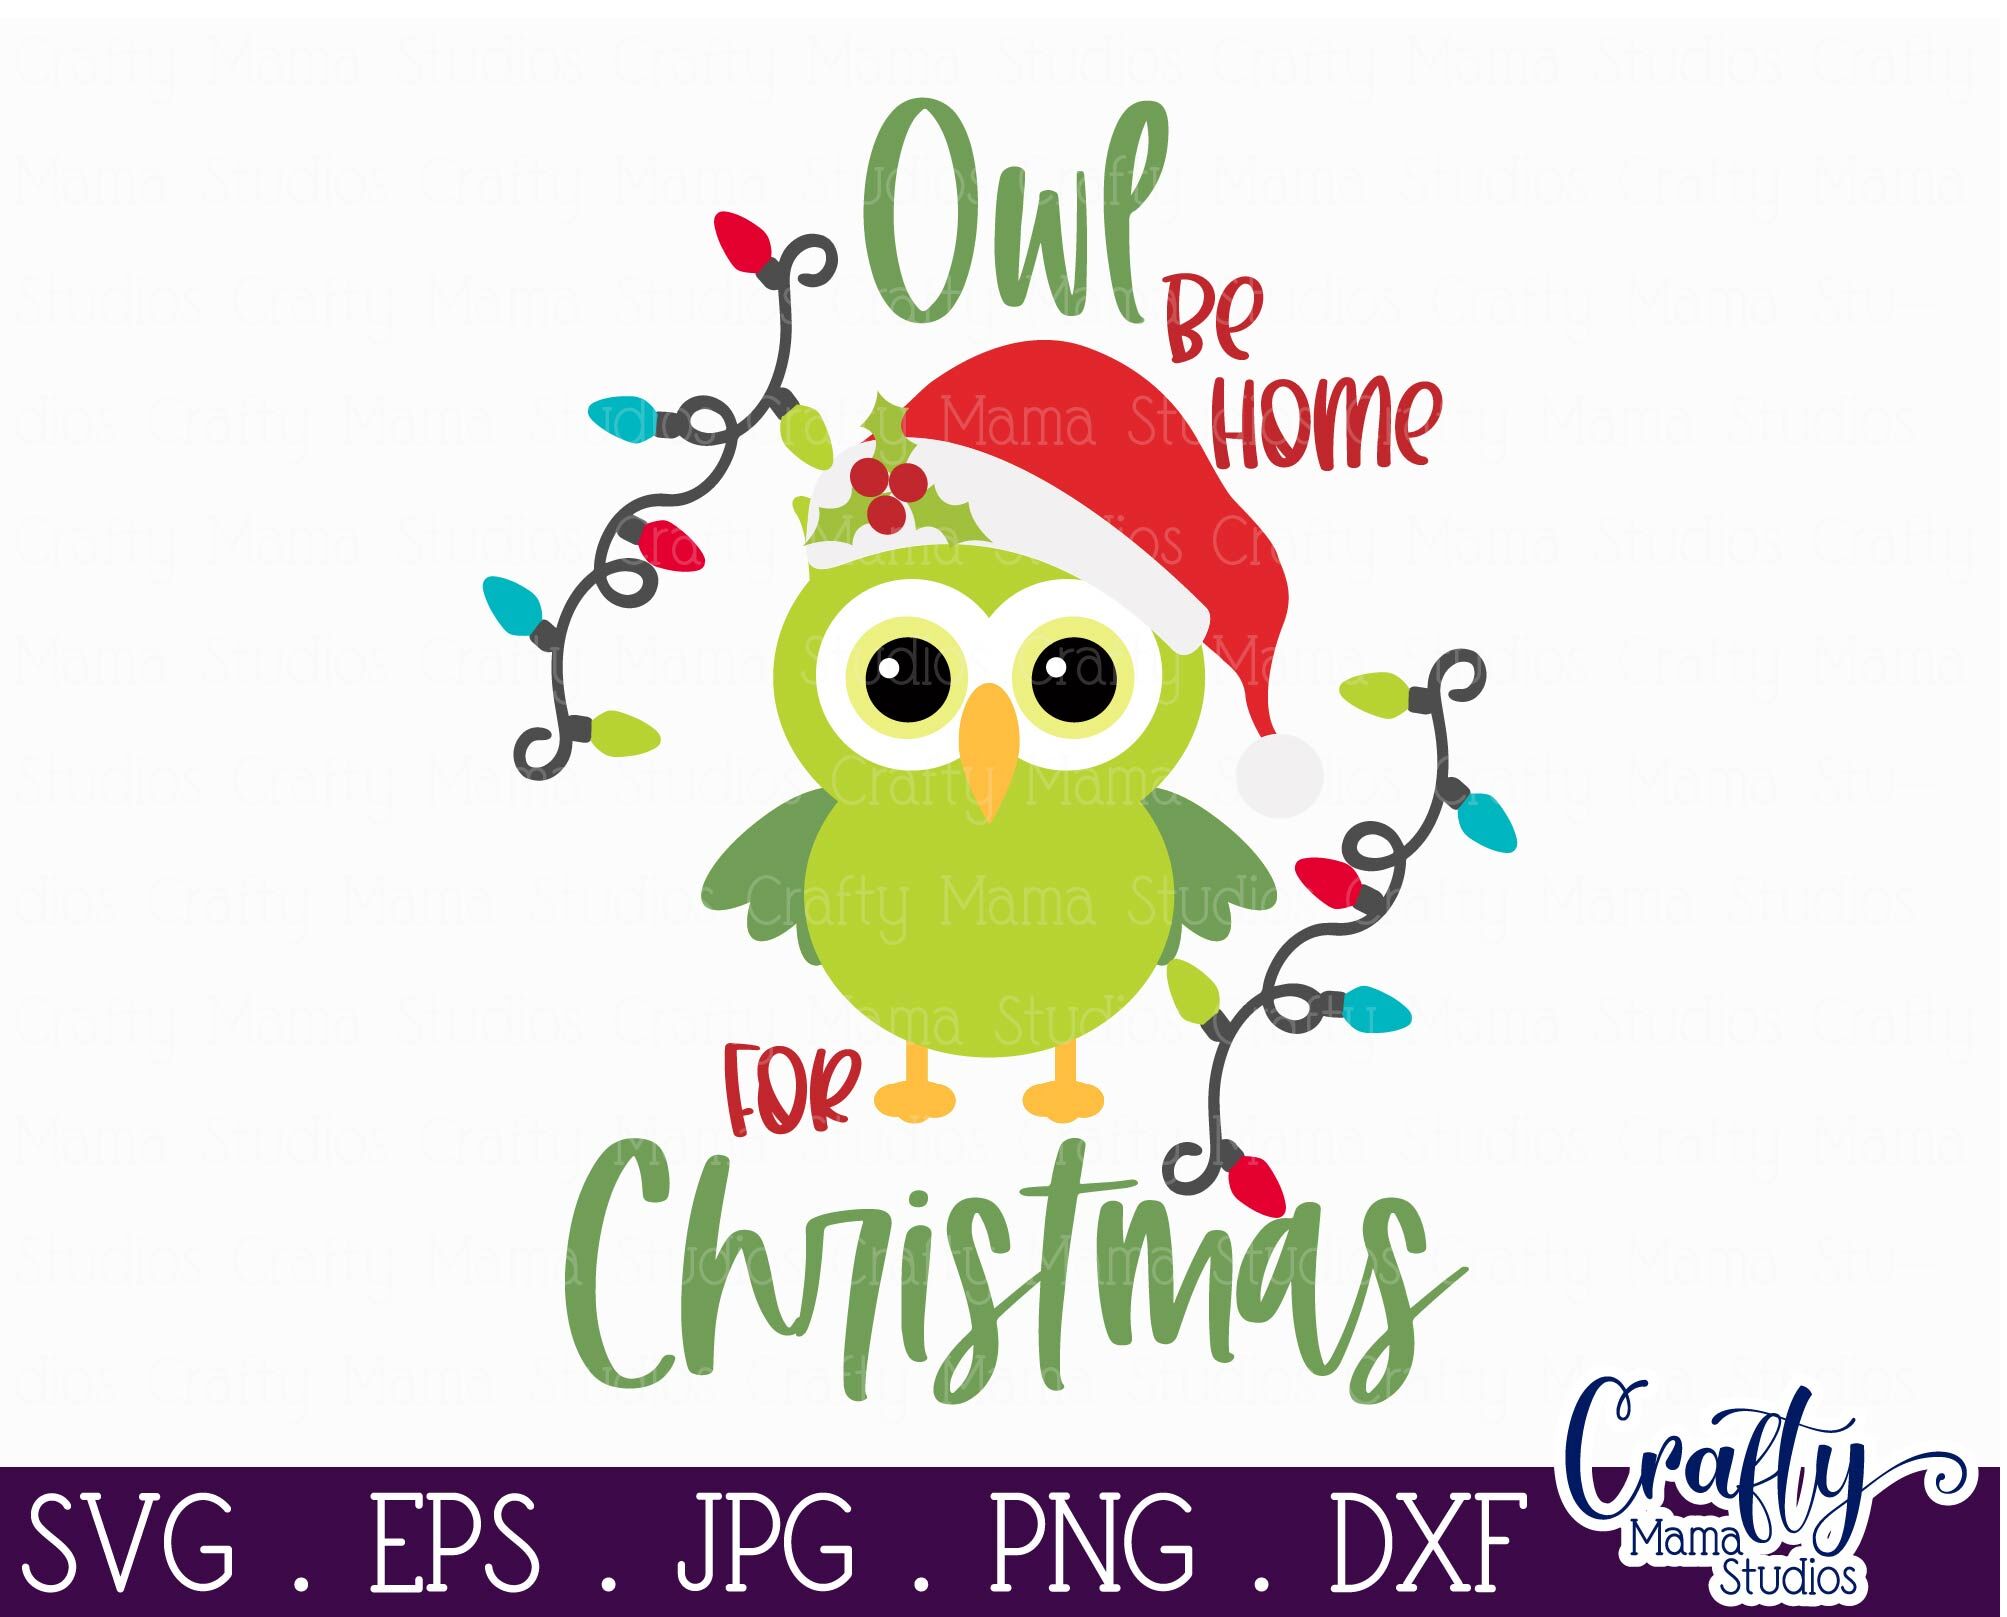 Christmas Svg, Animal Svg - Owl Svg - Owl Be Home For Christmas By